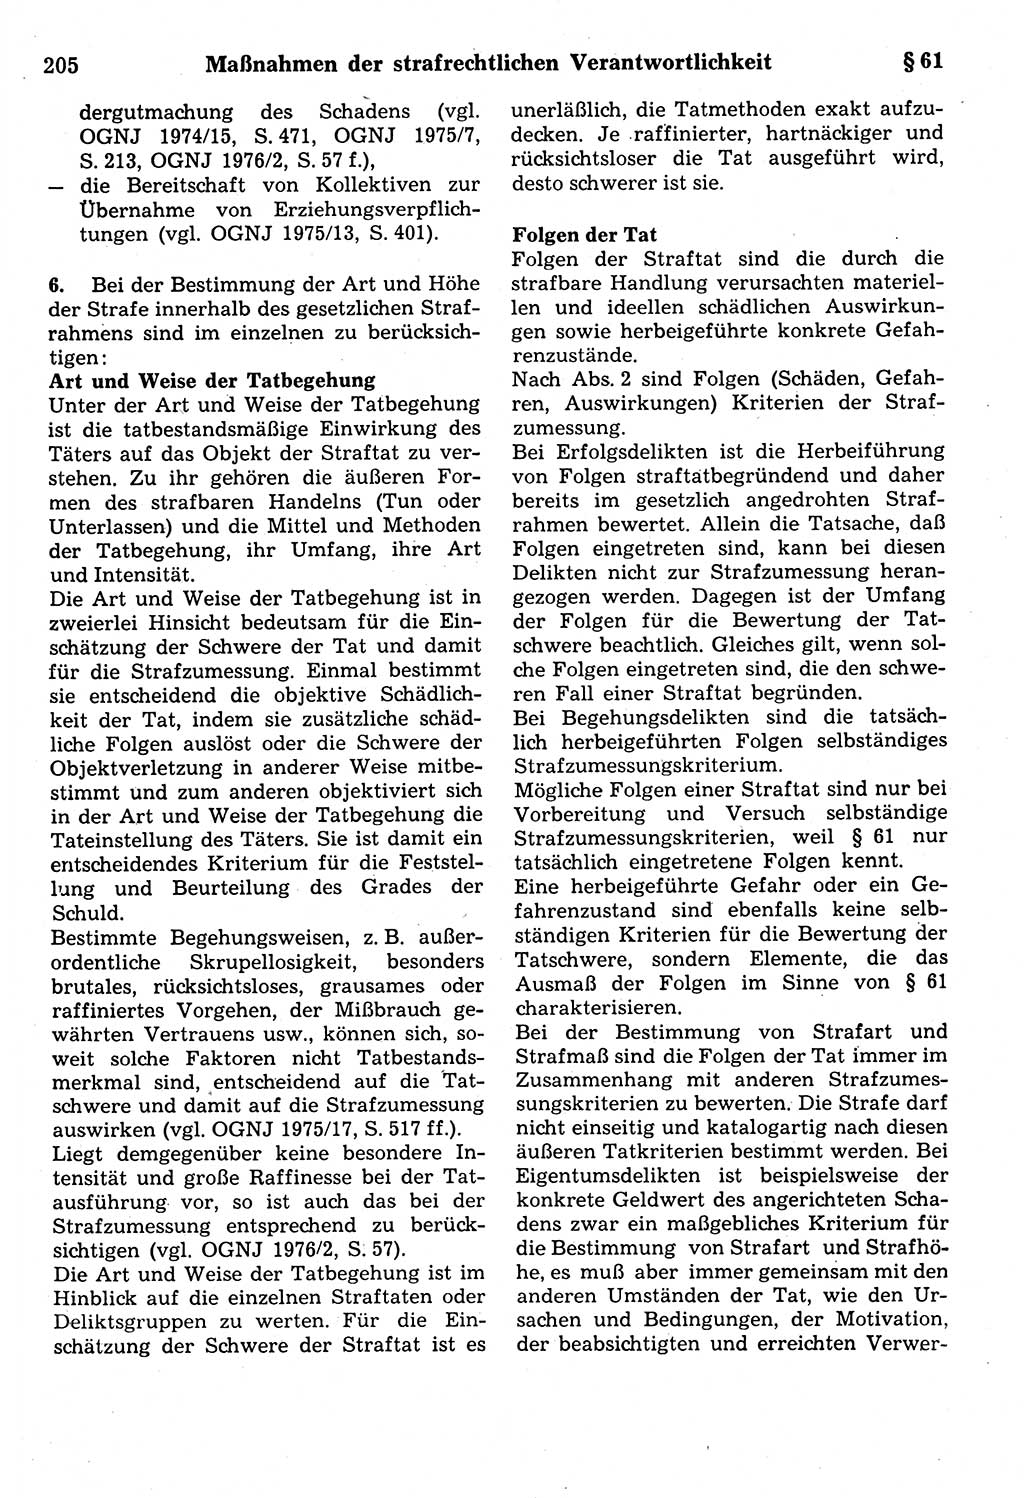 Strafrecht der Deutschen Demokratischen Republik (DDR), Kommentar zum Strafgesetzbuch (StGB) 1987, Seite 205 (Strafr. DDR Komm. StGB 1987, S. 205)